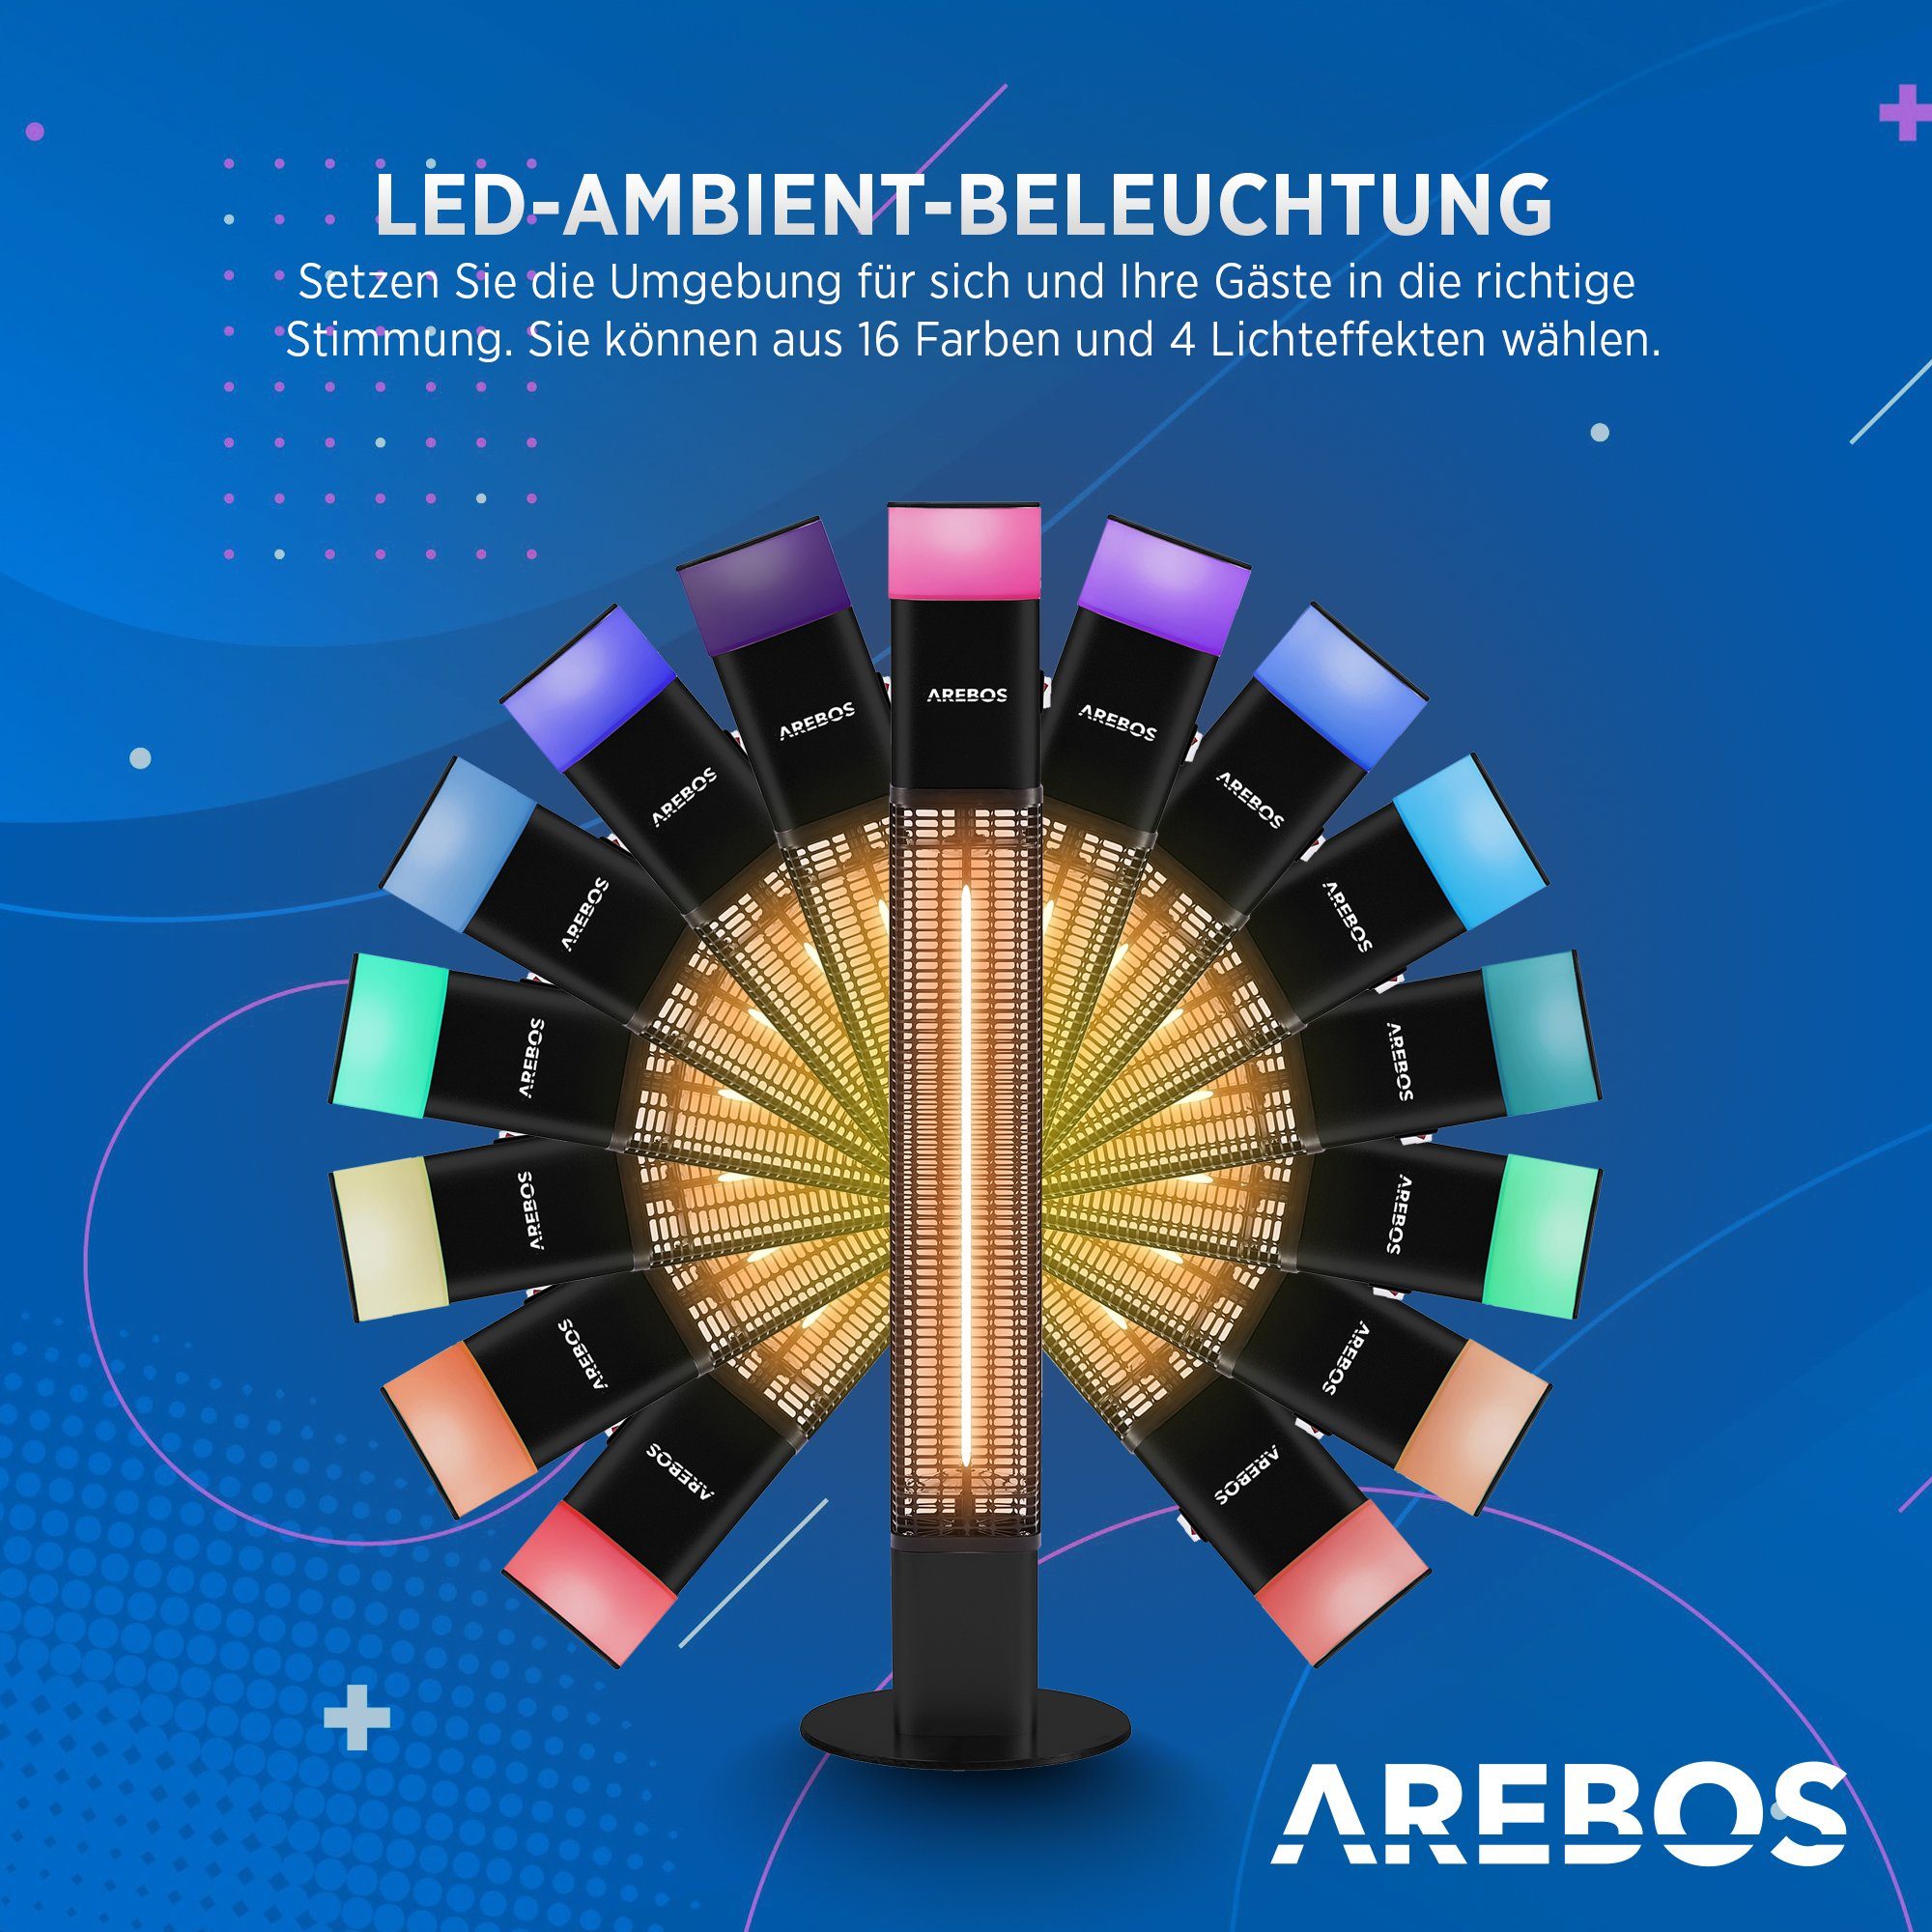 Arebos Heizstrahler 1500 Watt Stand, Farben, Kipp-Abschalter, Low-Glare-Technik LED, Fernbedienung, LED-Licht integrierte inkl.16 mit schwarz